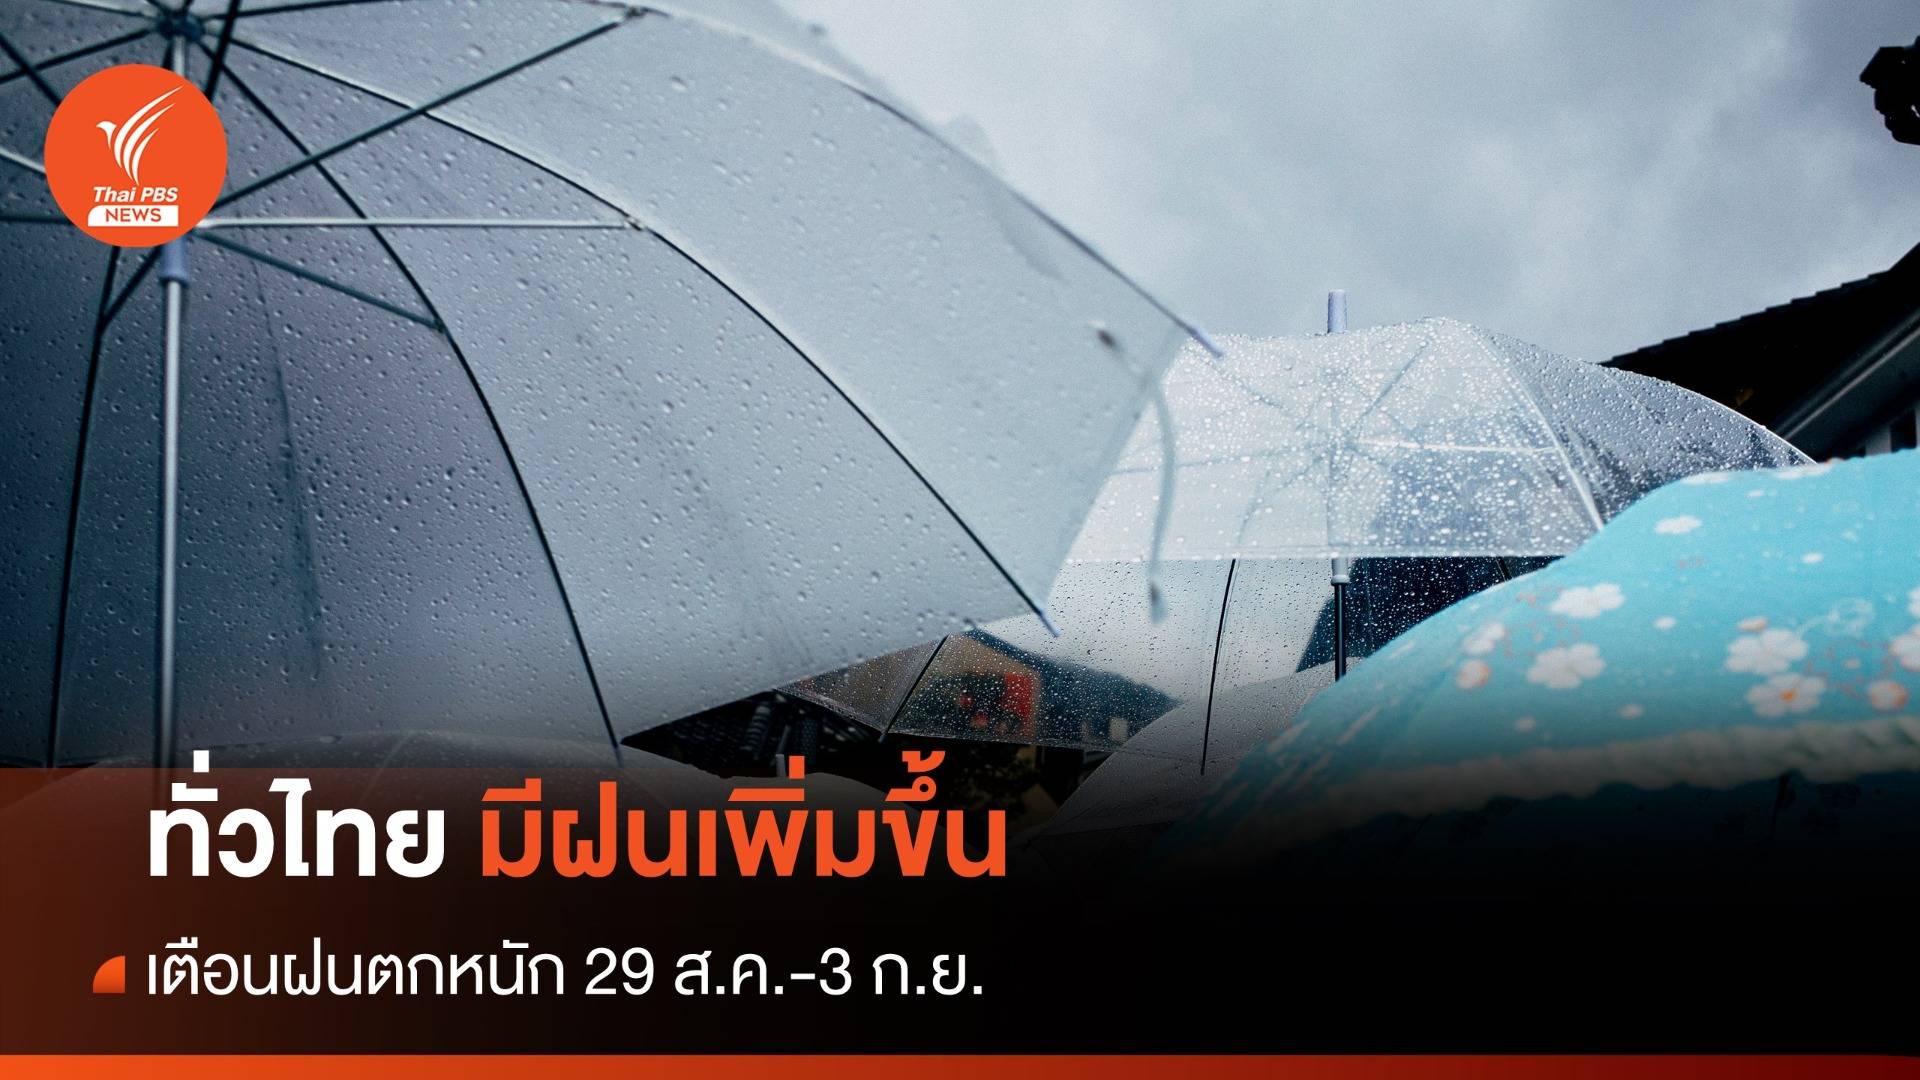 สภาพอากาศวันนี้ ทั่วไทยมีฝนฟ้าคะนอง เตือน 29 ส.ค.-3 ก.ย.ฝนตกหนัก